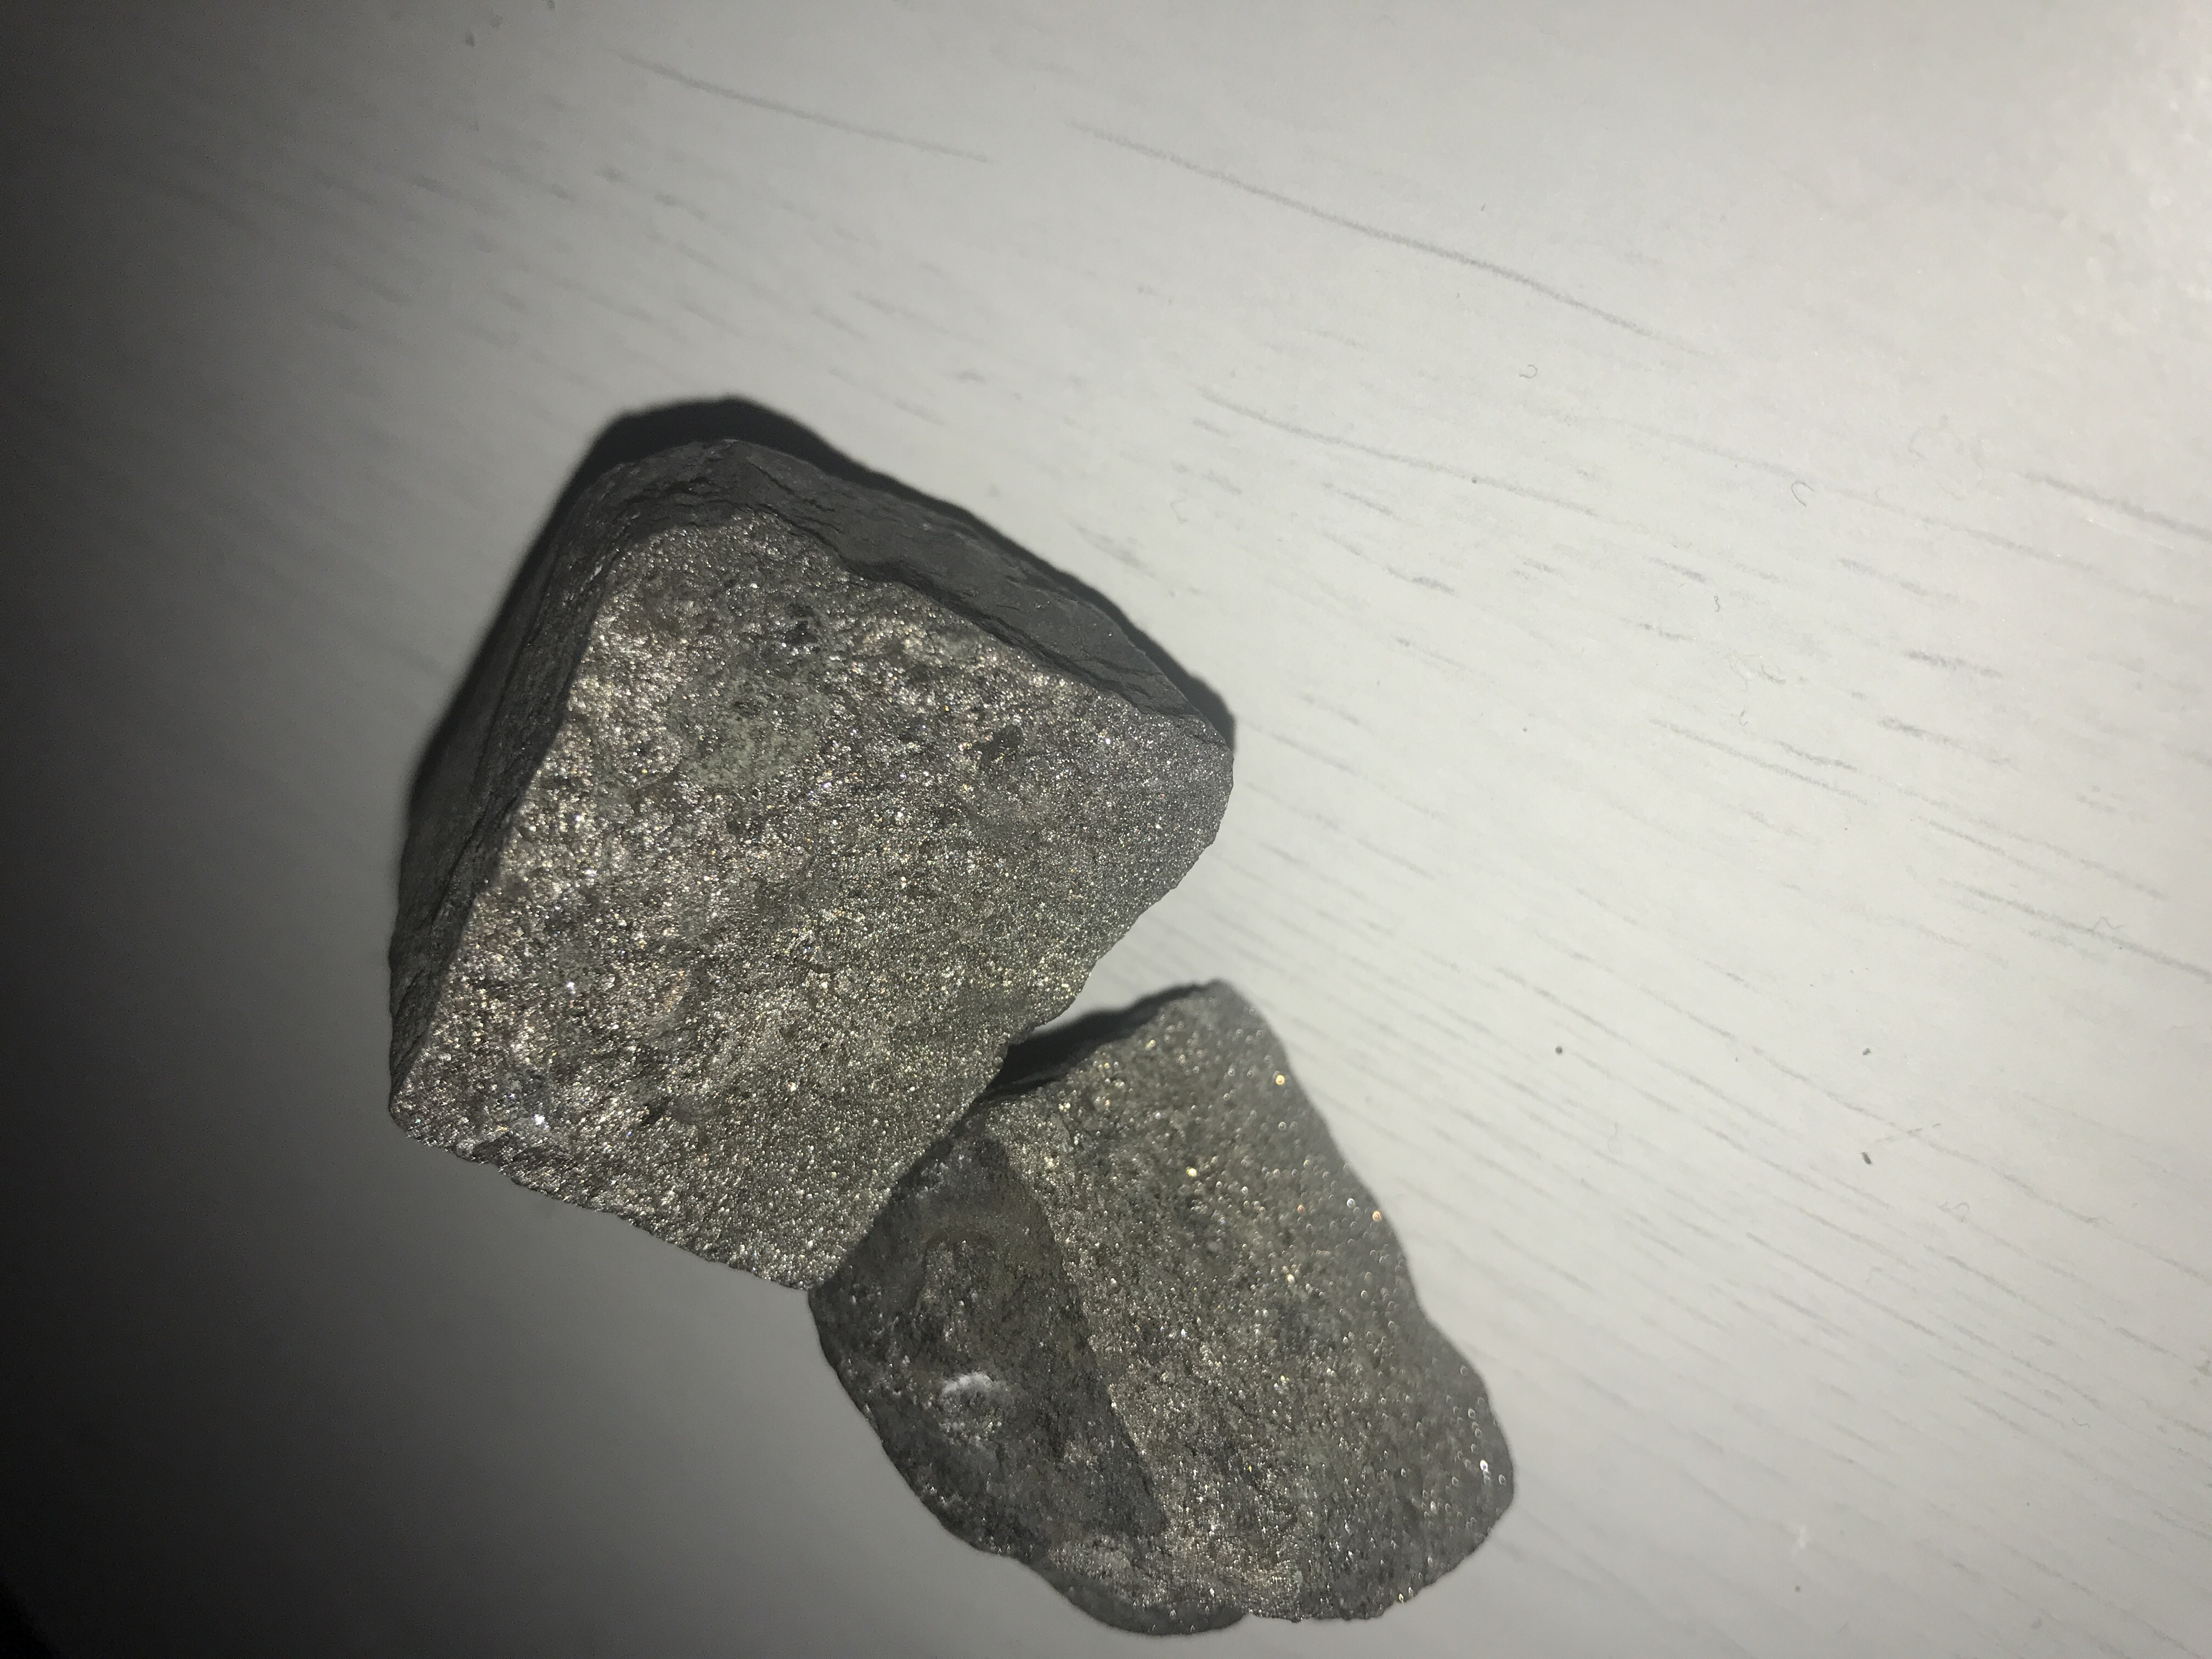 Ooit vertalen borstel Weet iemand misschien wat voor een soort steen dit is? - GoeieVraag